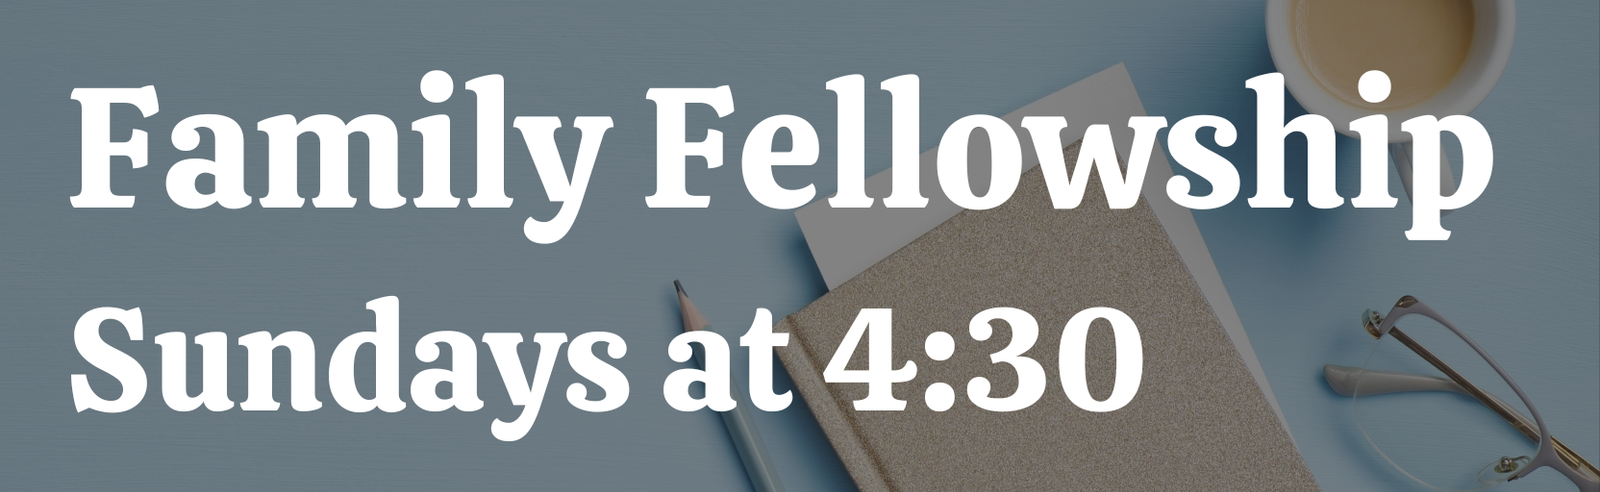 Family Fellowship Nov sign